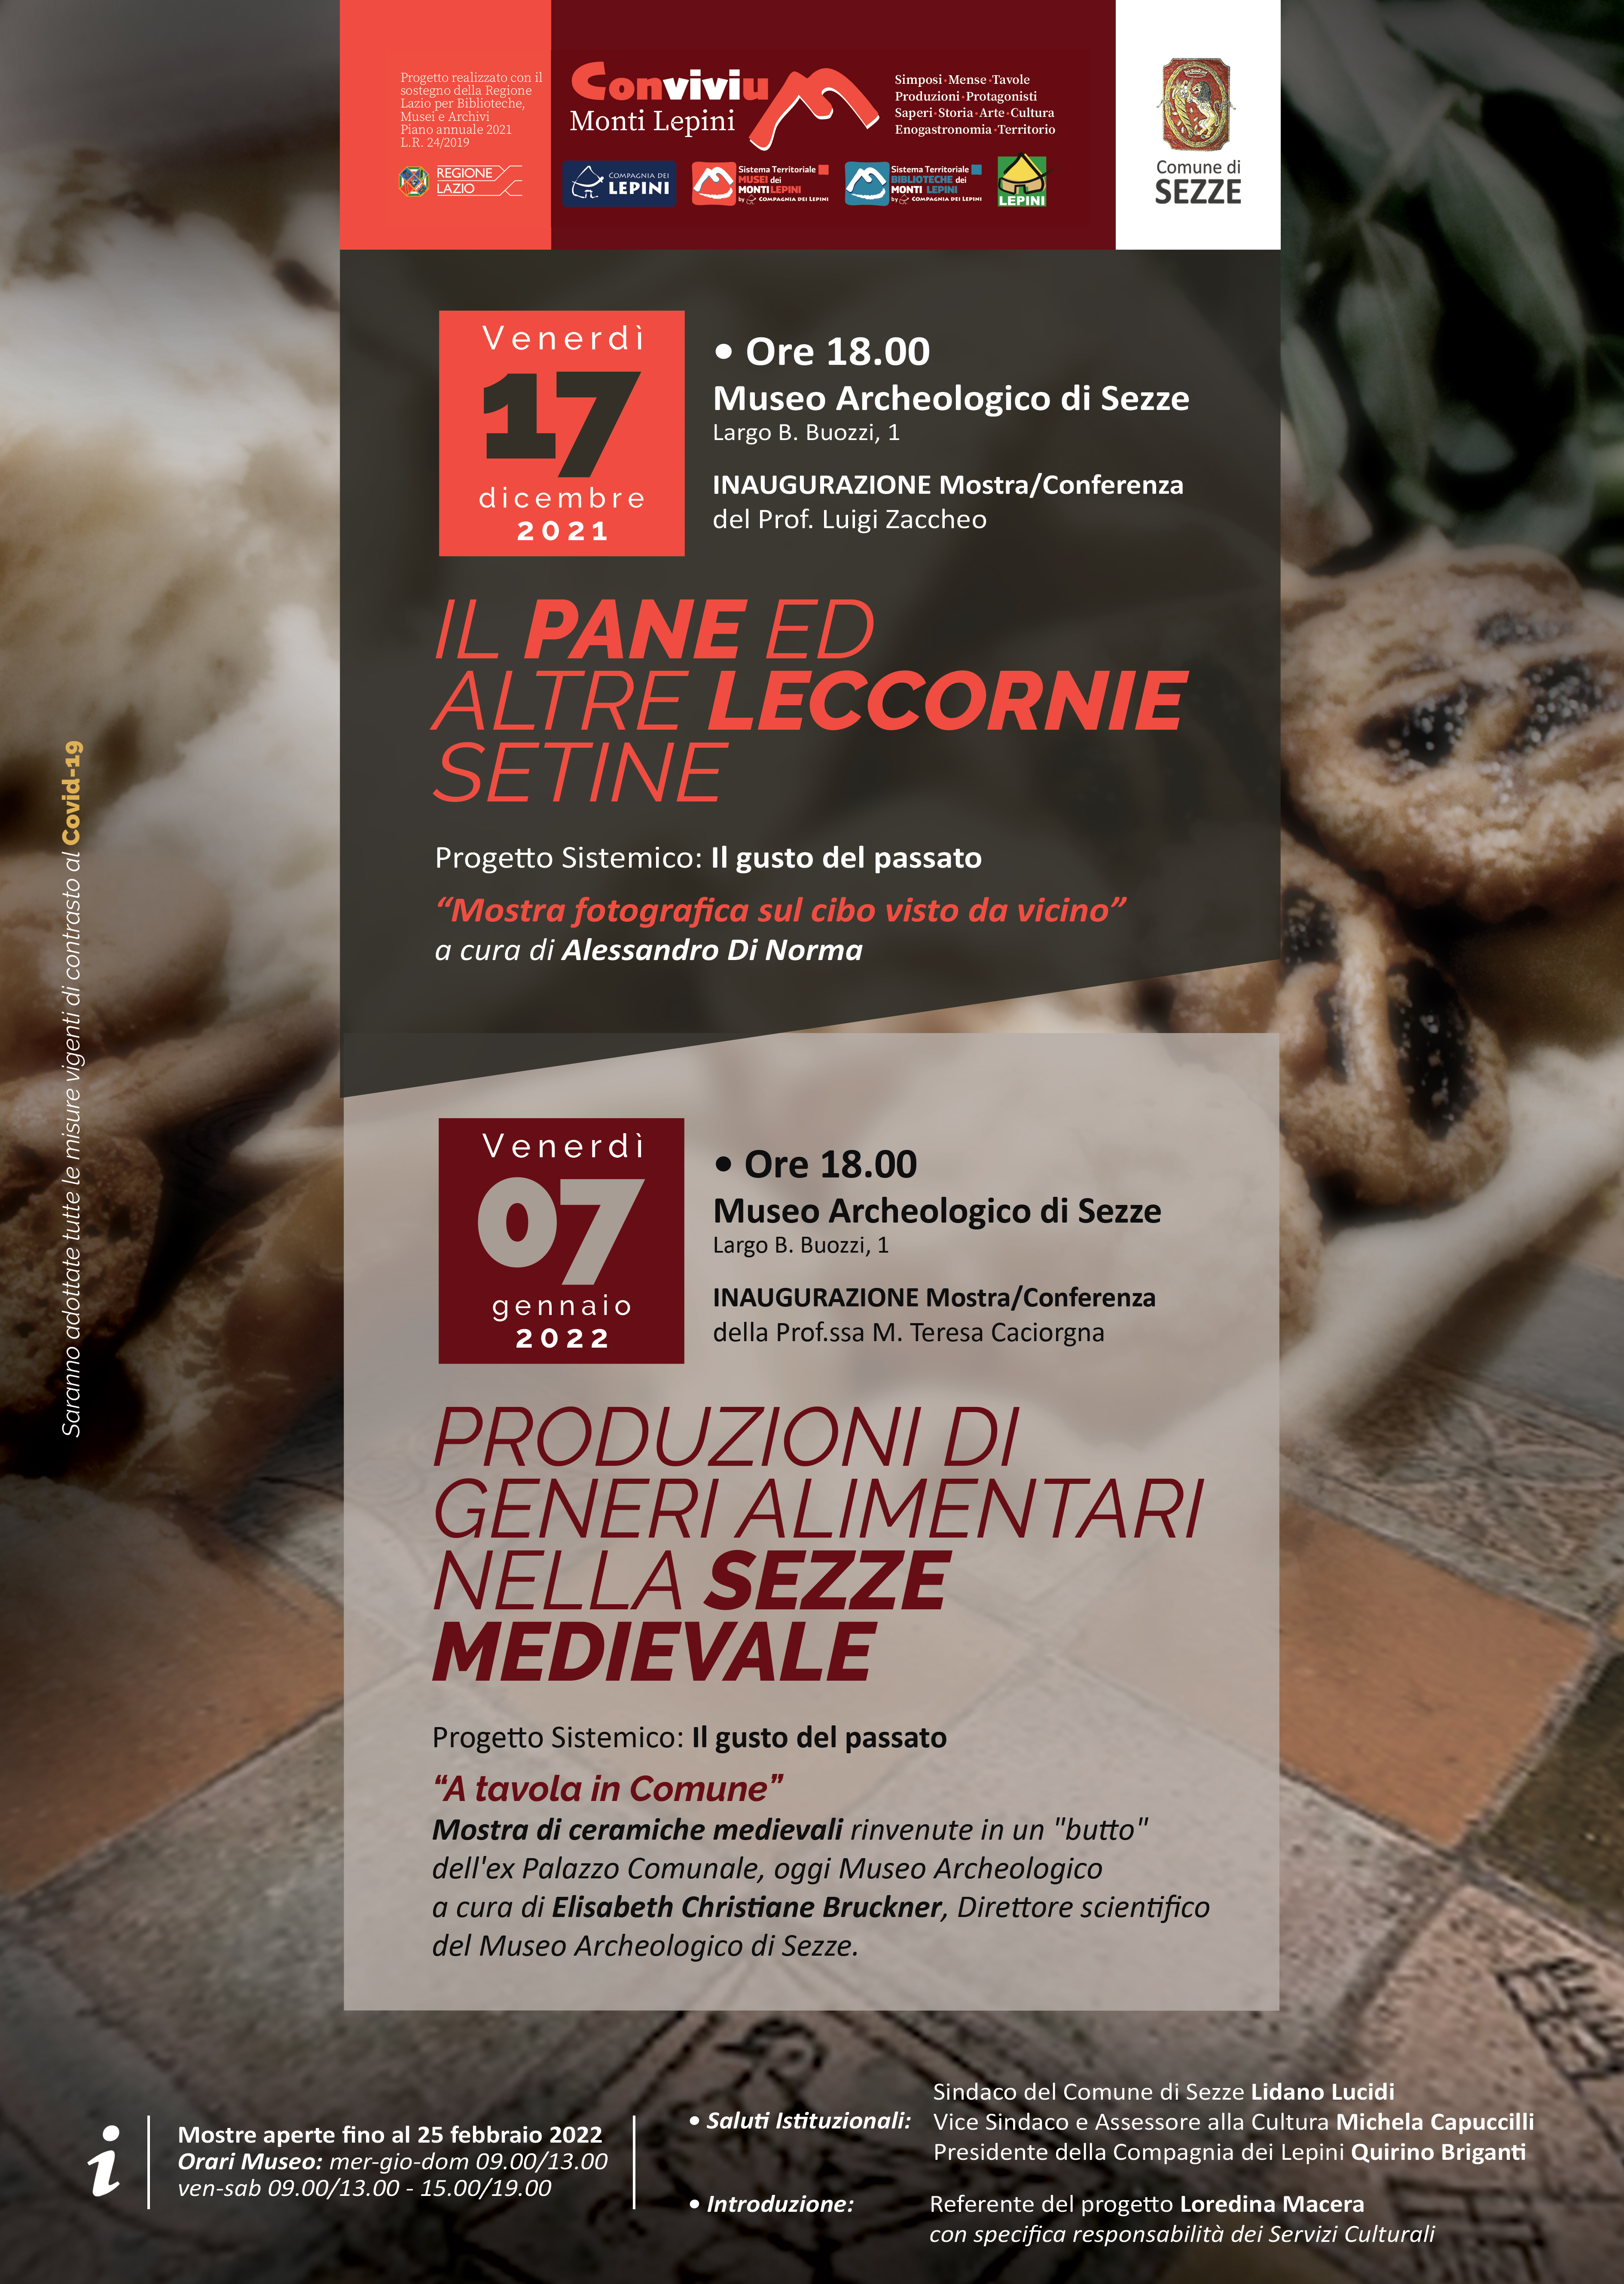 Convivium Sezze: Il Pane ed altre leccornie setine @ Museo Archeologico di Sezze